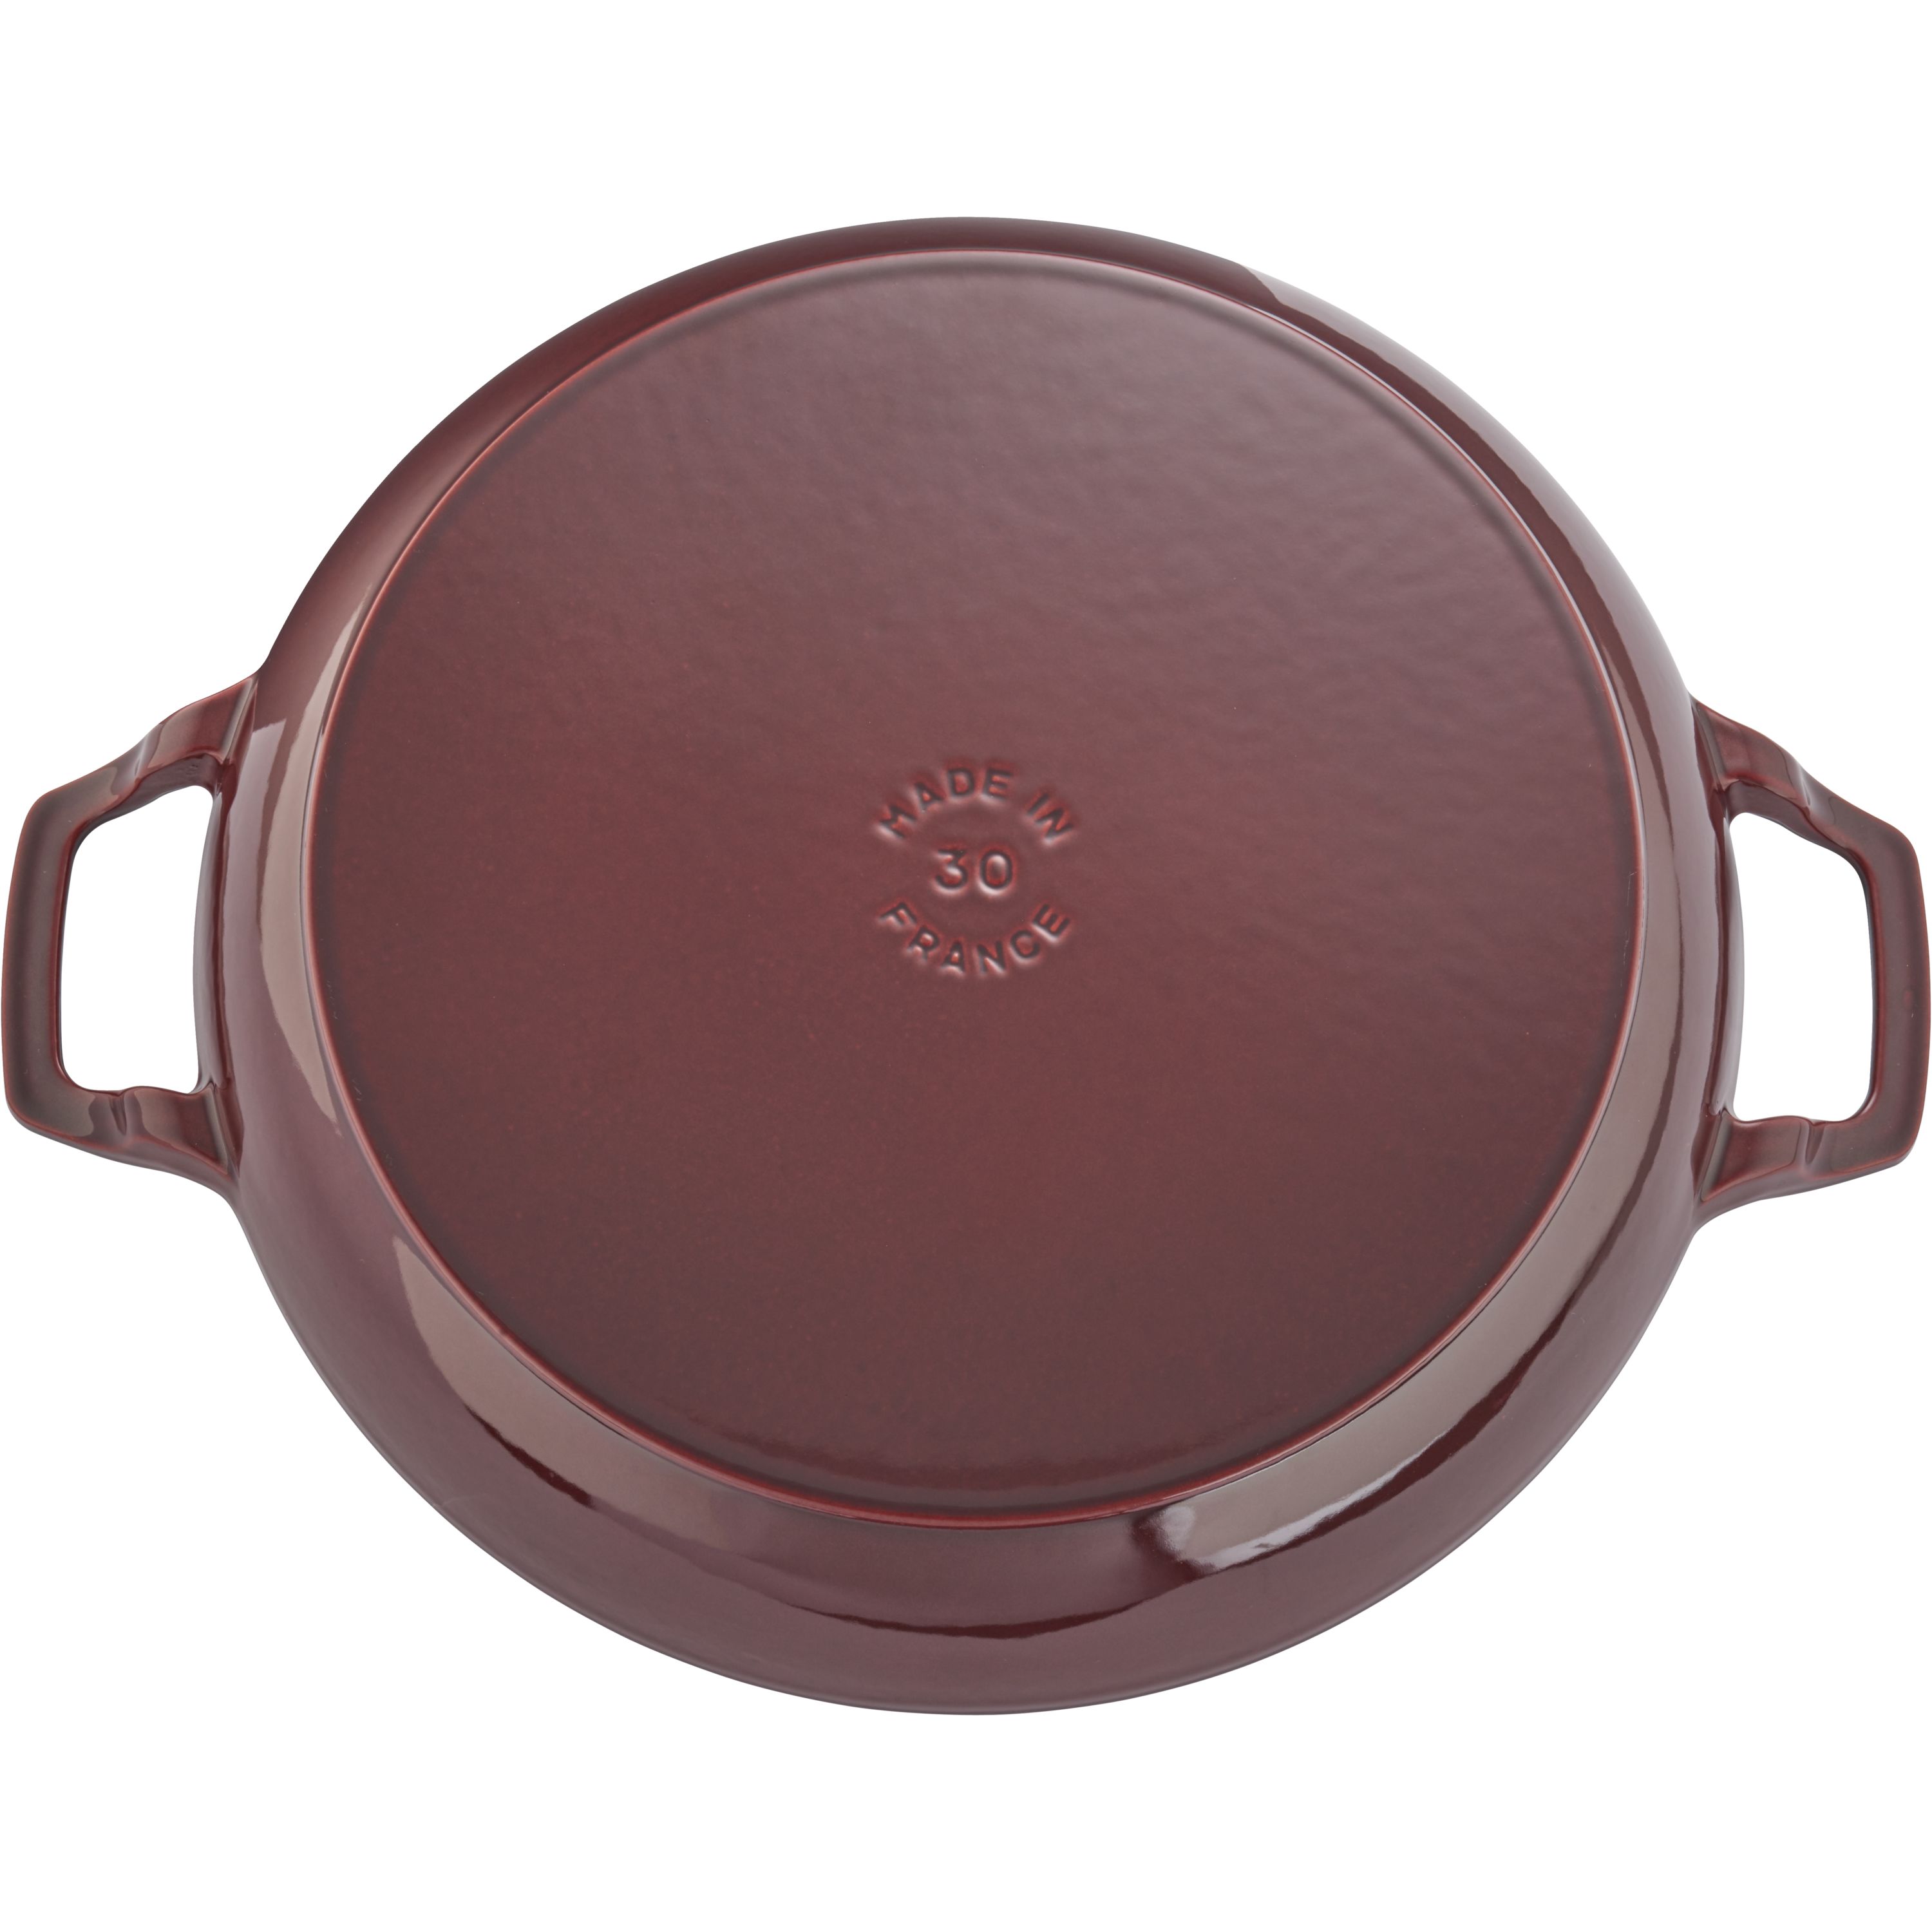 Buy Staub Cast Iron - Braisers/ Sauté Pans Saute pan with glass lid